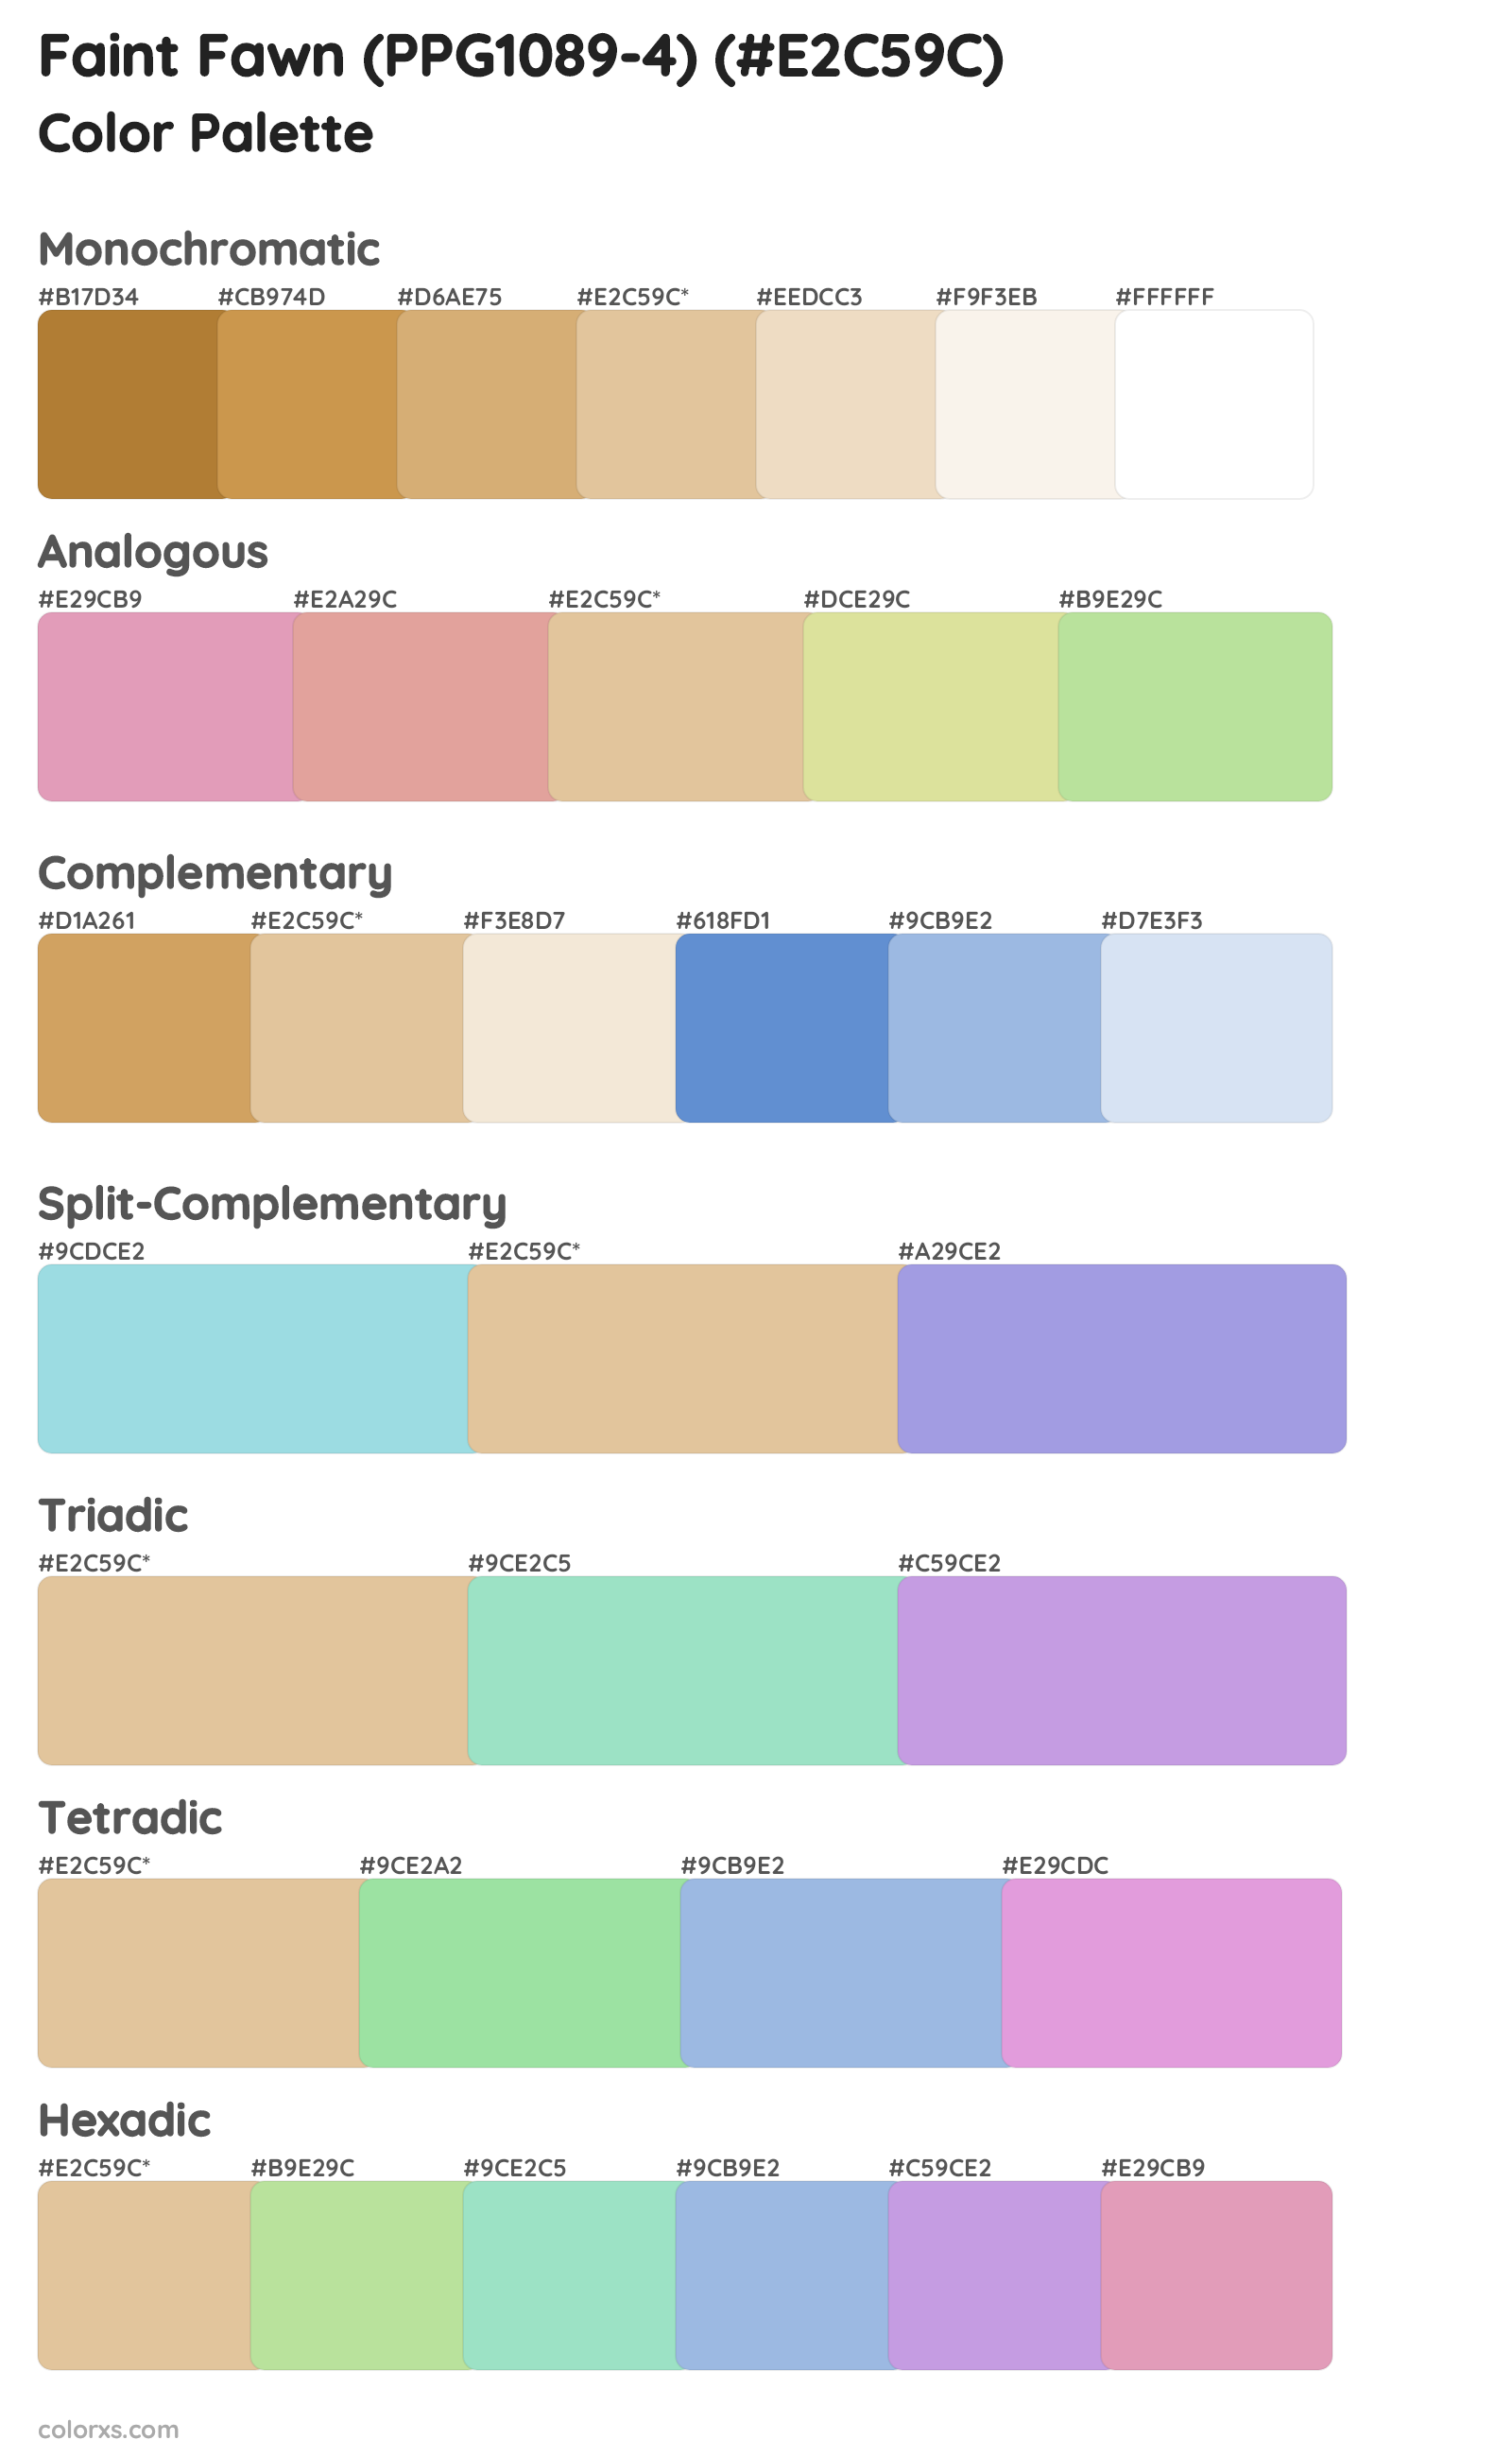 Faint Fawn (PPG1089-4) Color Scheme Palettes